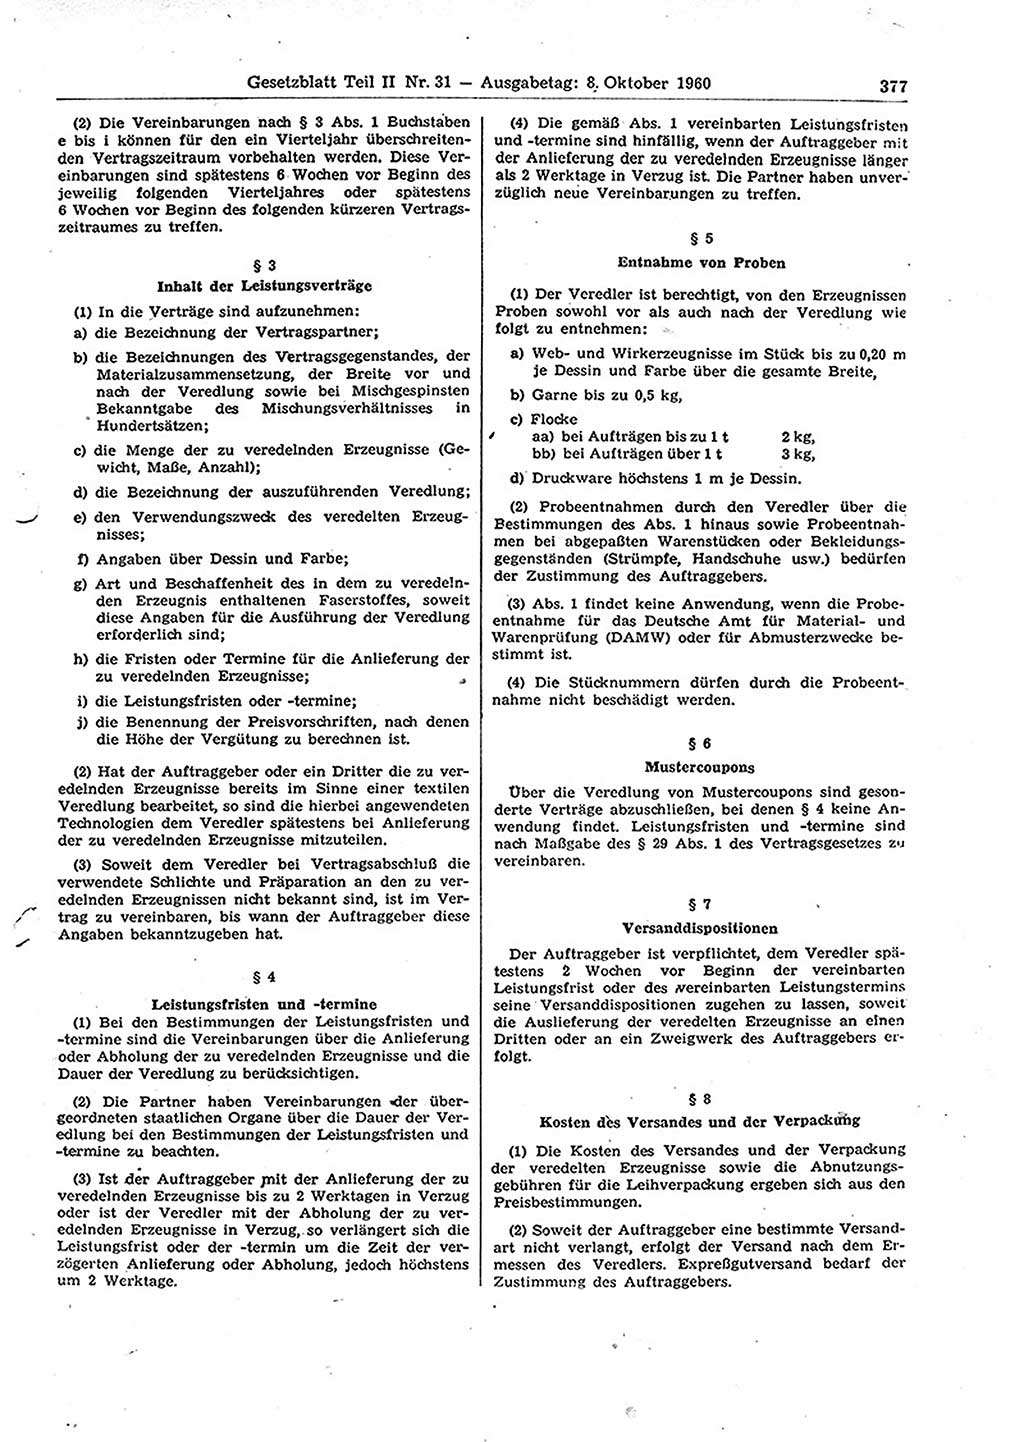 Gesetzblatt (GBl.) der Deutschen Demokratischen Republik (DDR) Teil ⅠⅠ 1960, Seite 377 (GBl. DDR ⅠⅠ 1960, S. 377)